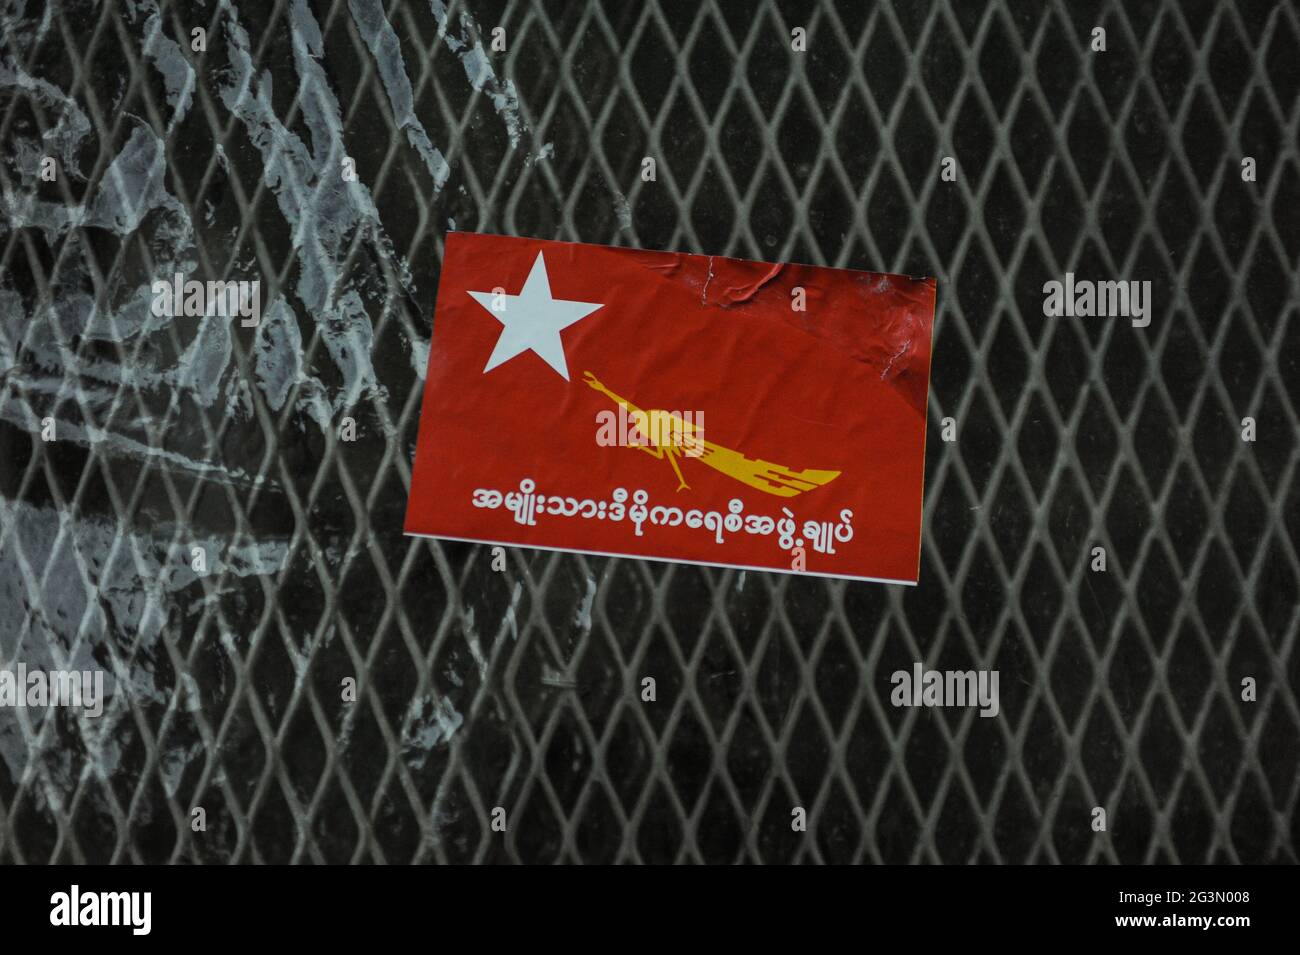 '29.10.2015, Yangon, , Myanmar - UN adesivo rosso con il logo e la formulazione del partito NLD (Lega Nazionale per la democrazia) è bloccato su una recinzione nella f Foto Stock